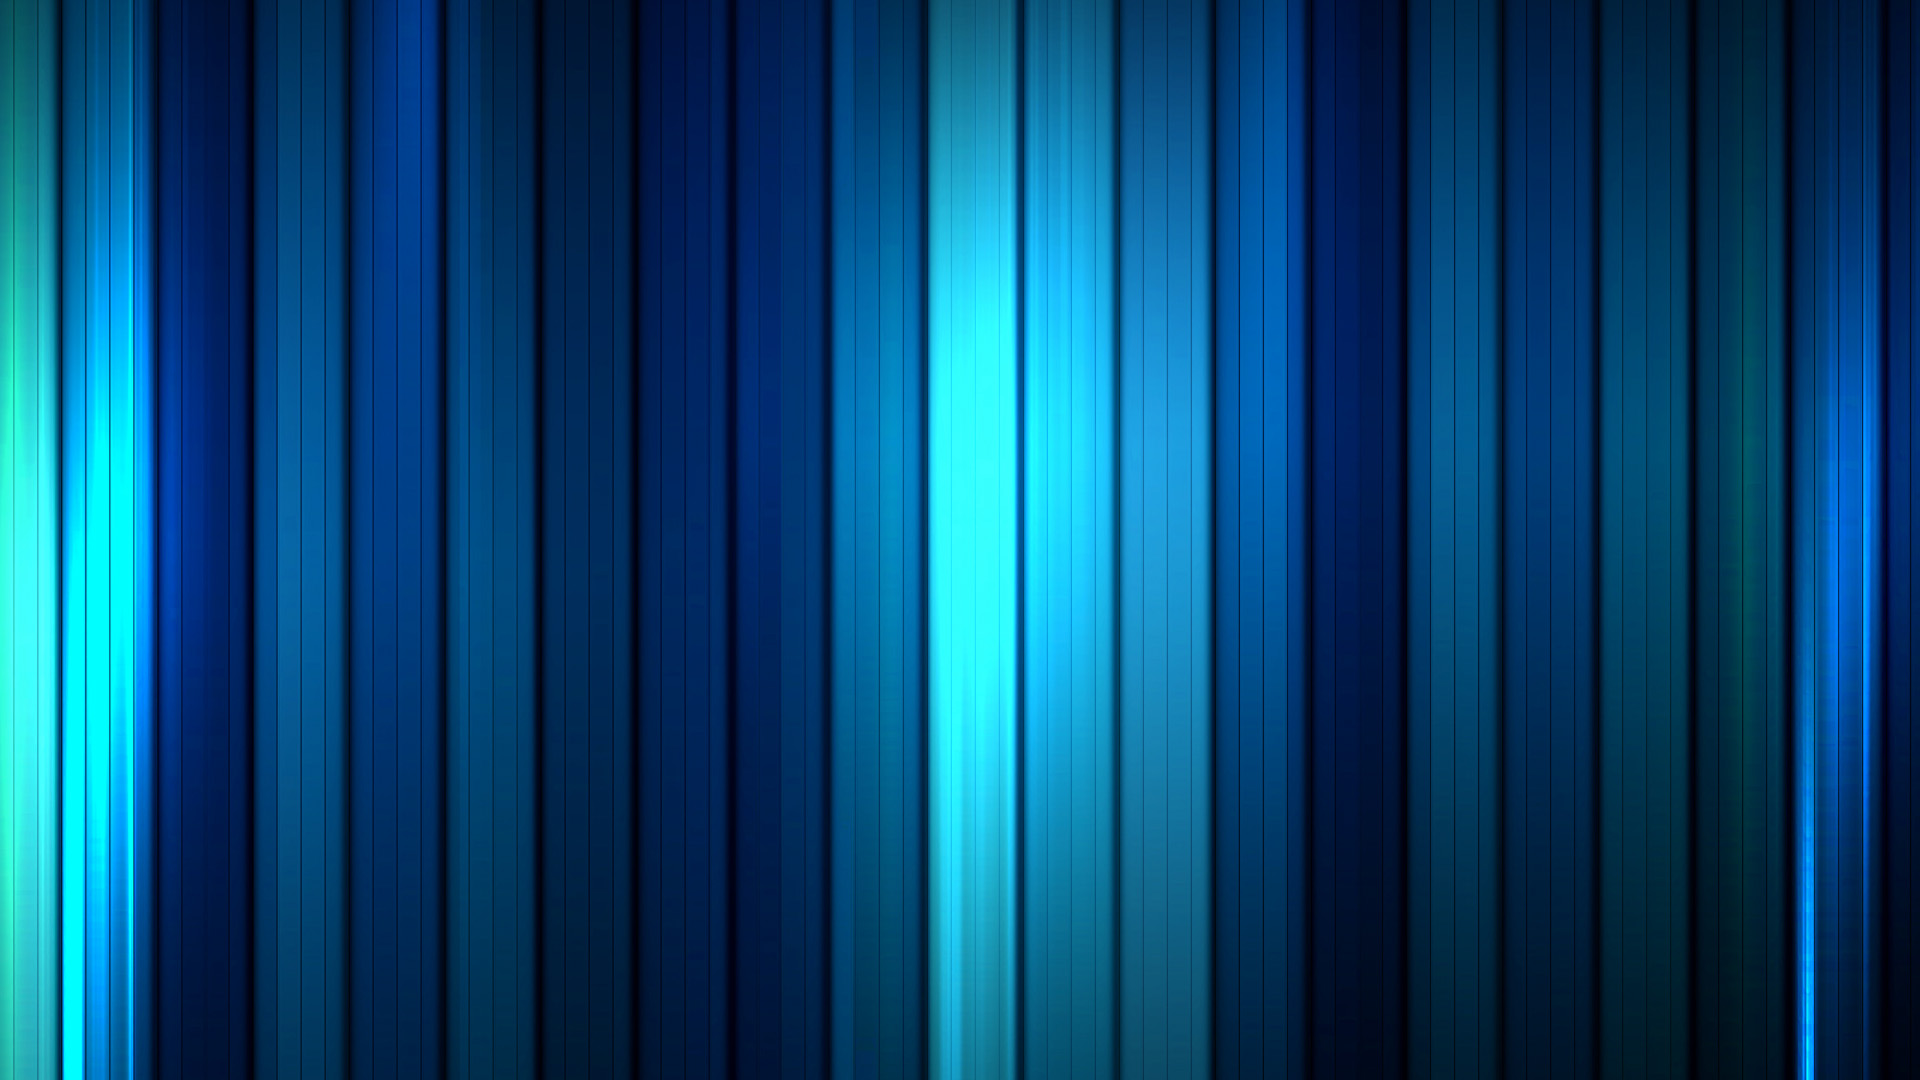 tapetenbilder hd,blau,kobaltblau,türkis,grün,elektrisches blau